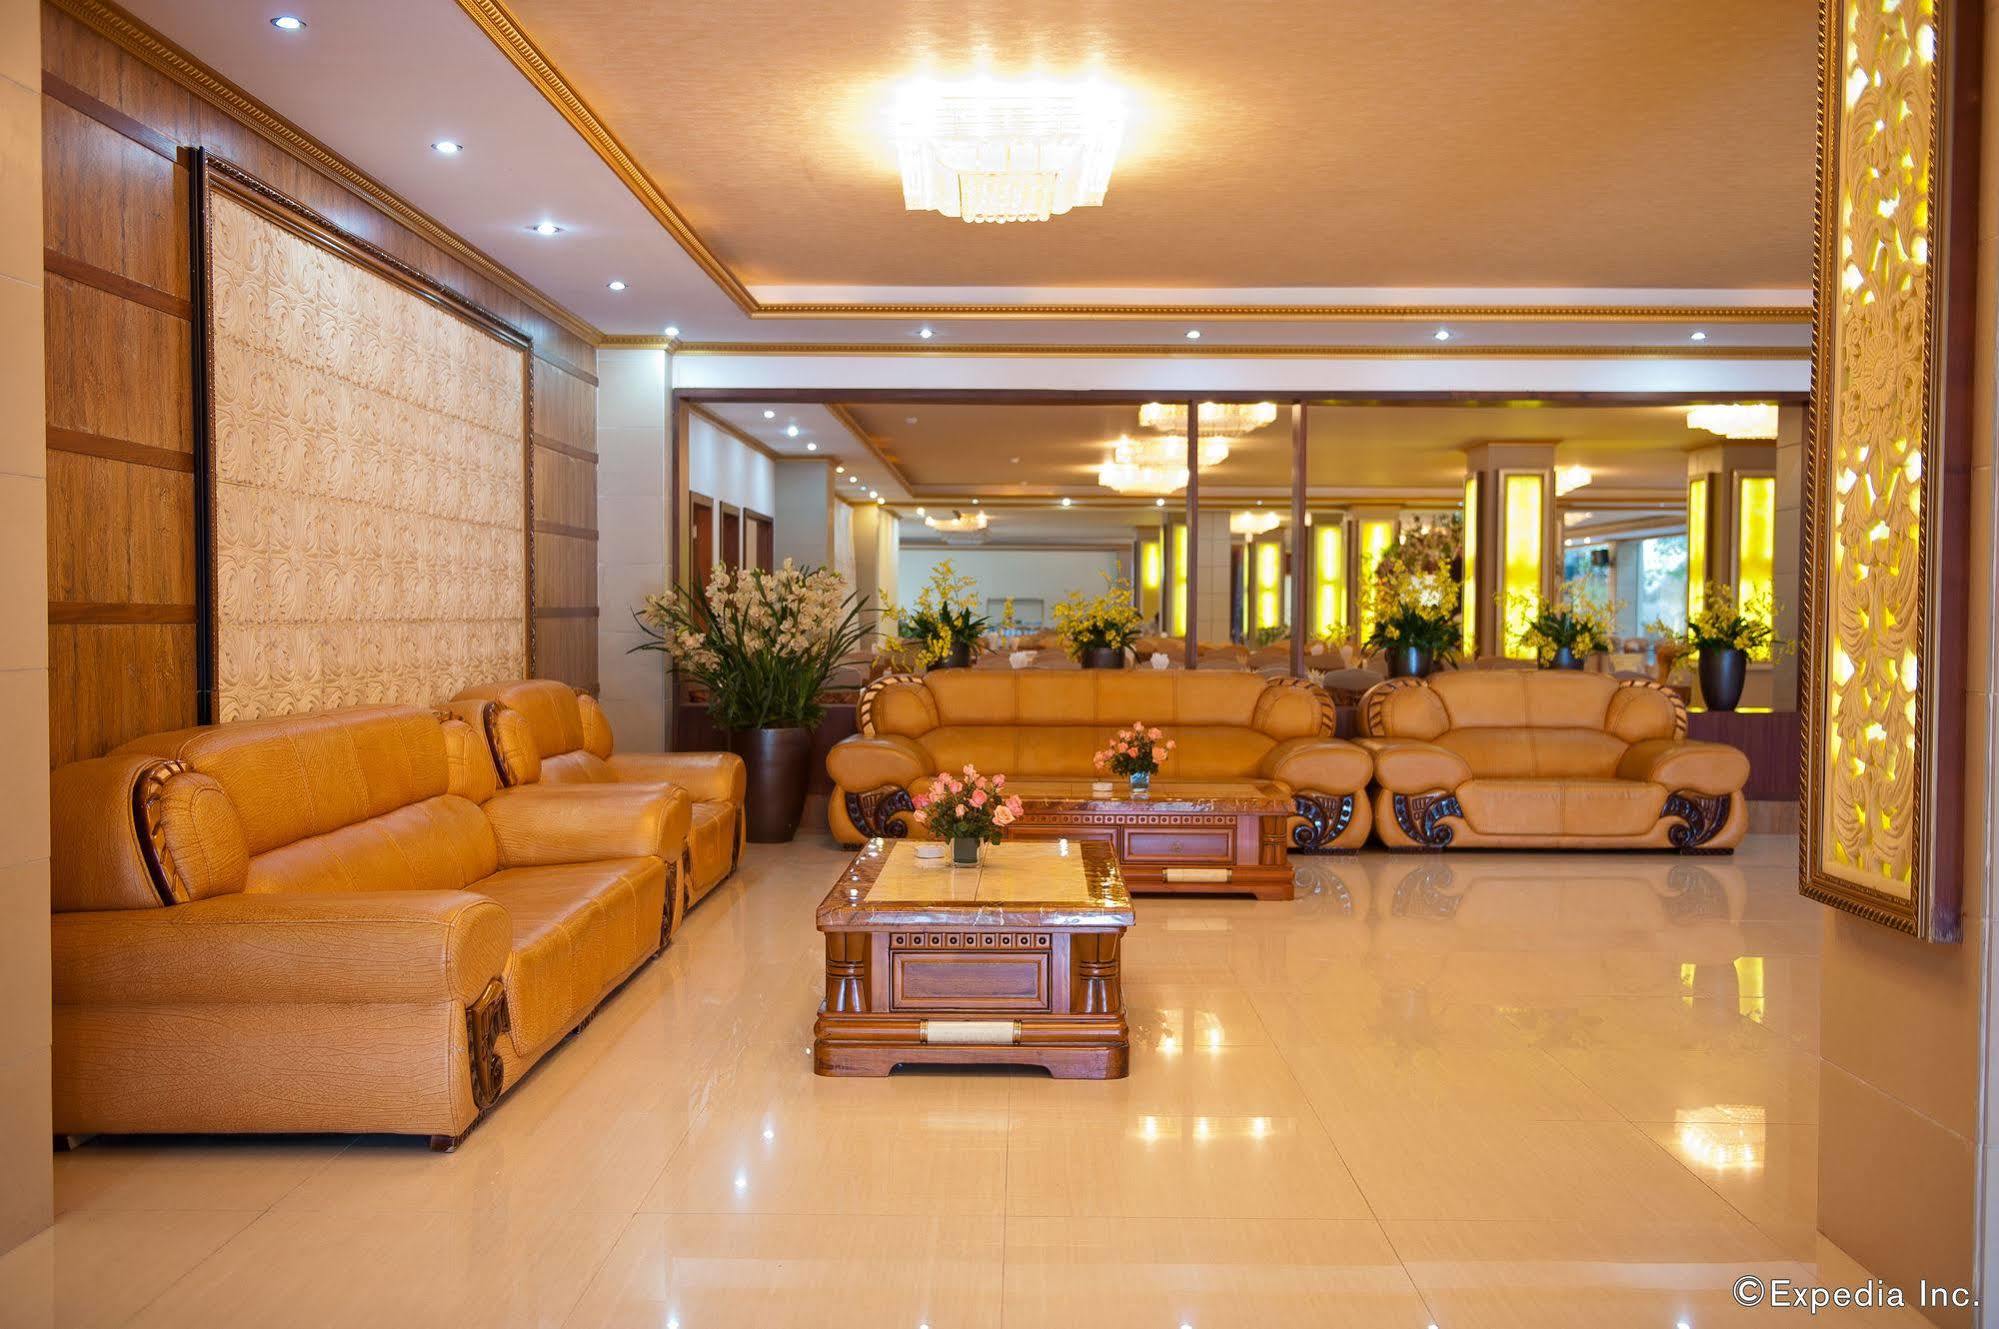 Muong Thanh Sapa Hotel Экстерьер фото